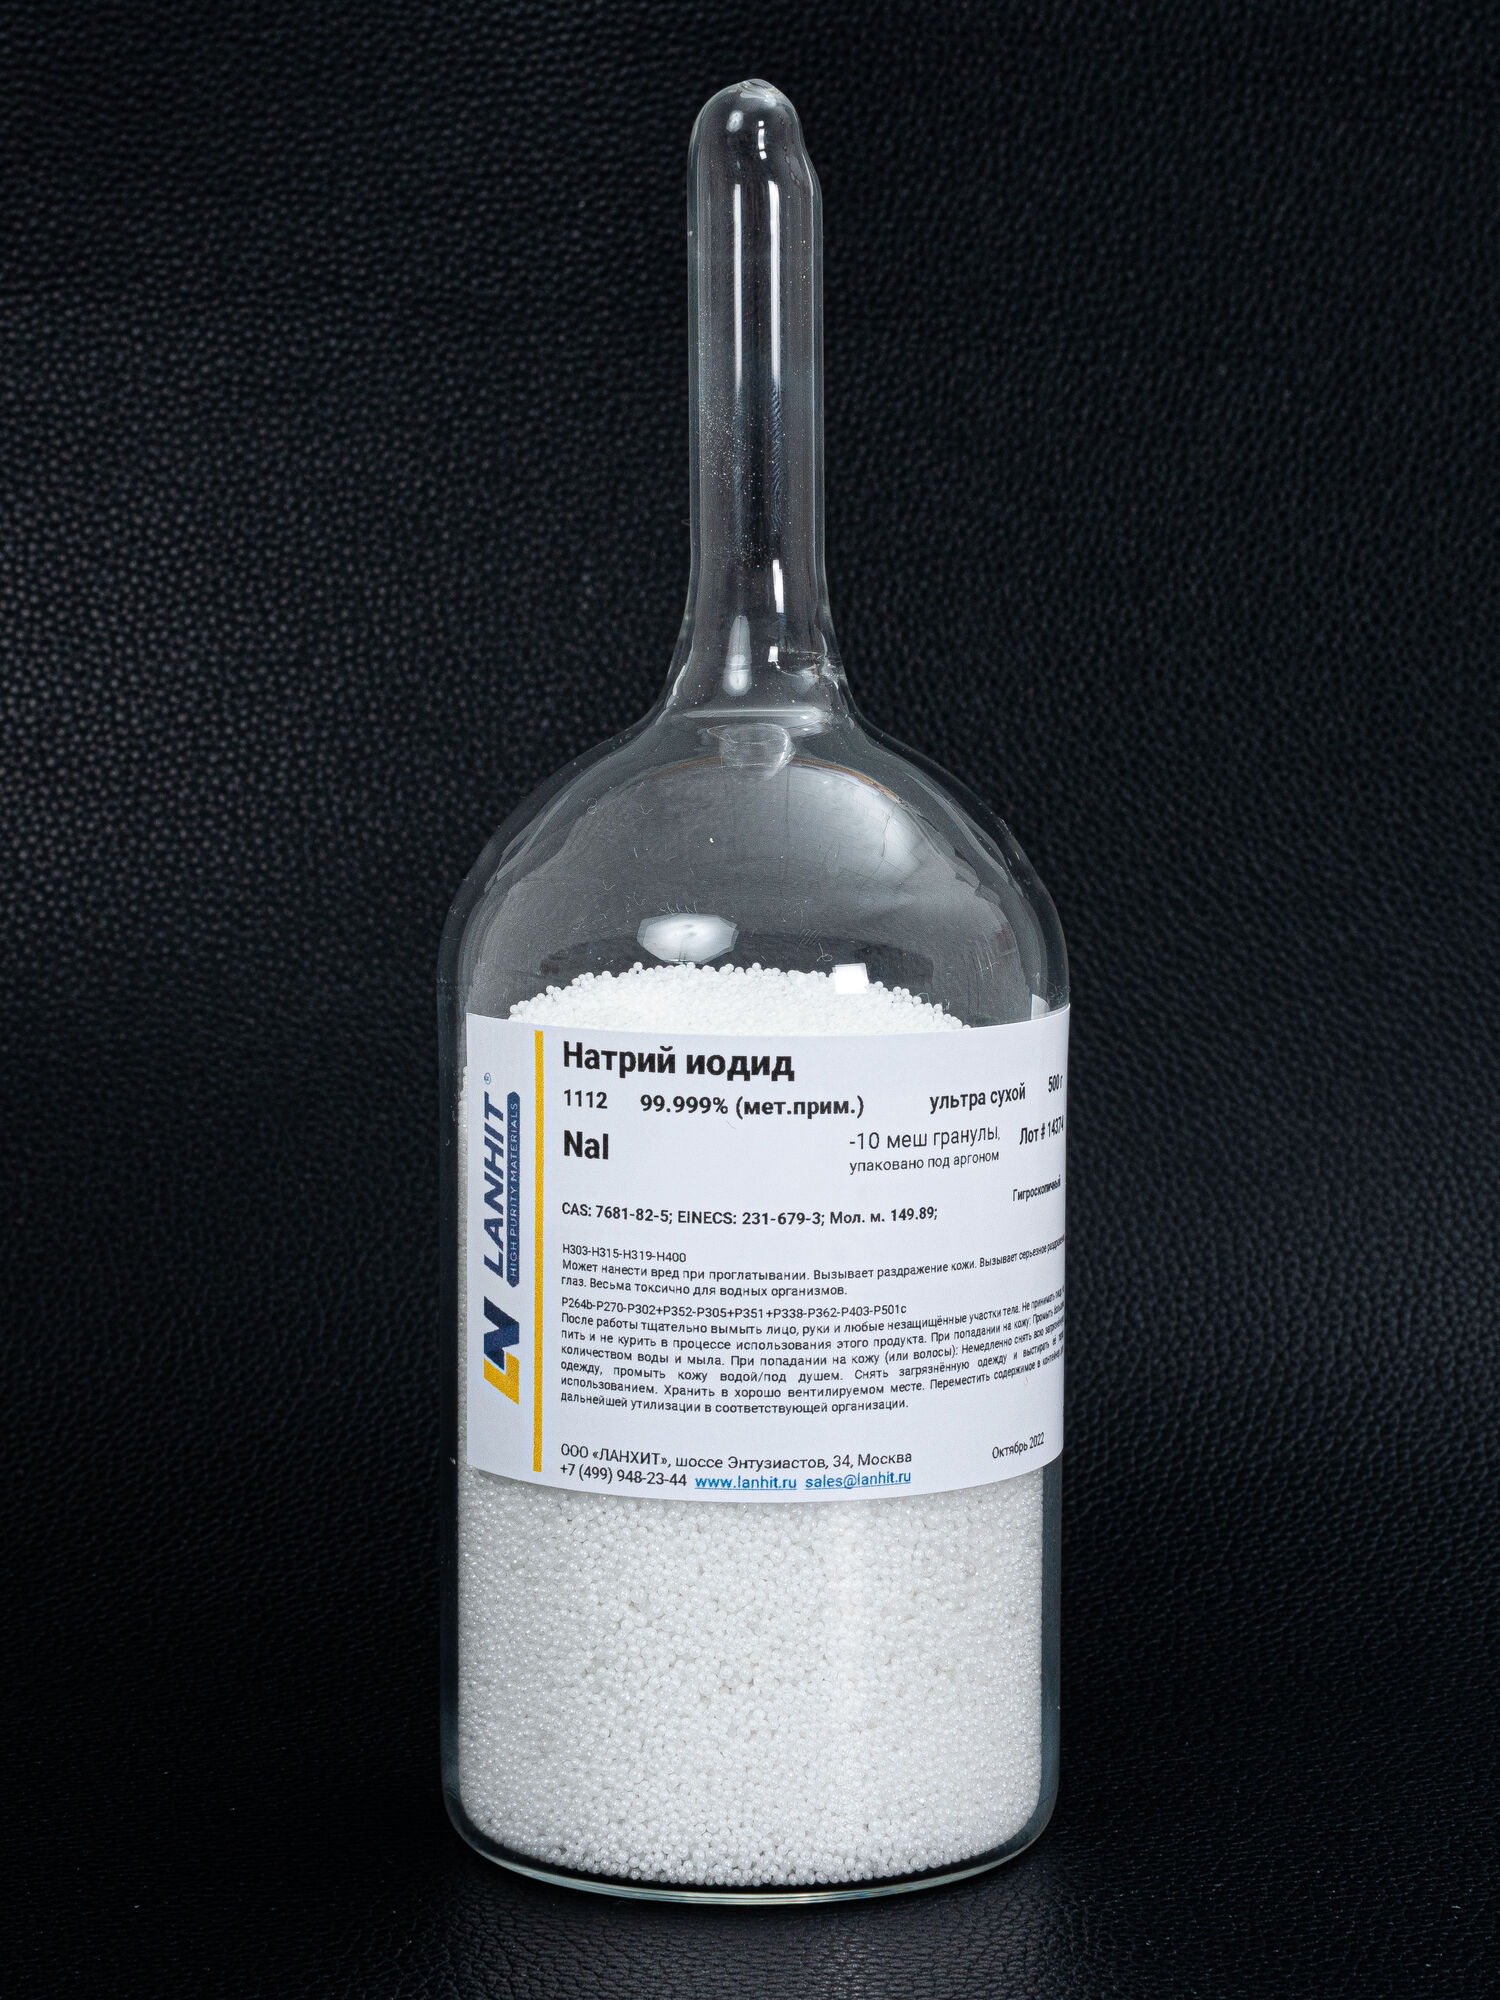 Натрий иодид, ультра сухой, 99.98% (мет.прим), -10 меш гранулы